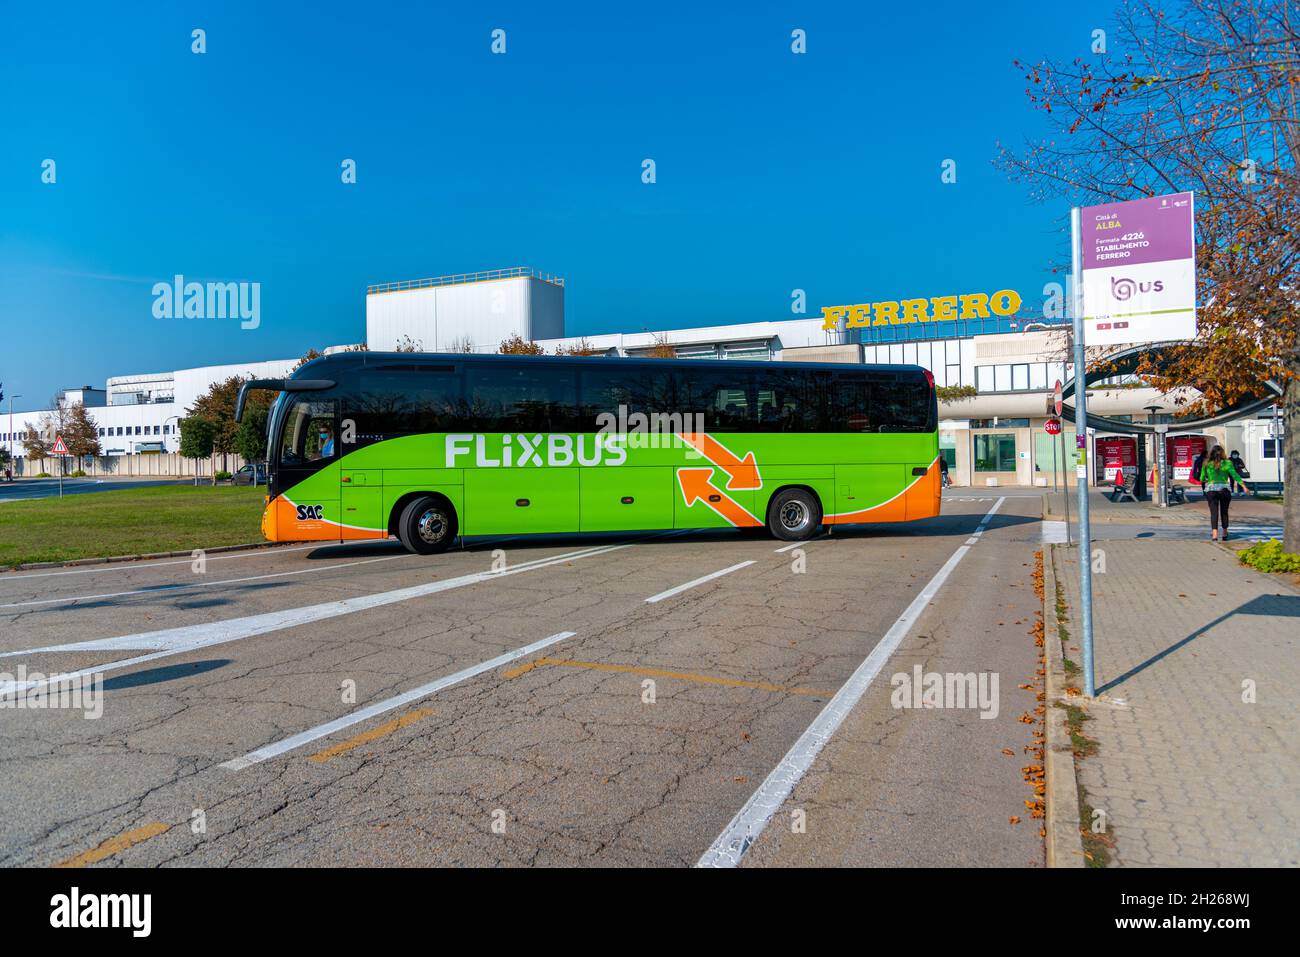 Coach bus italy immagini e fotografie stock ad alta risoluzione - Alamy